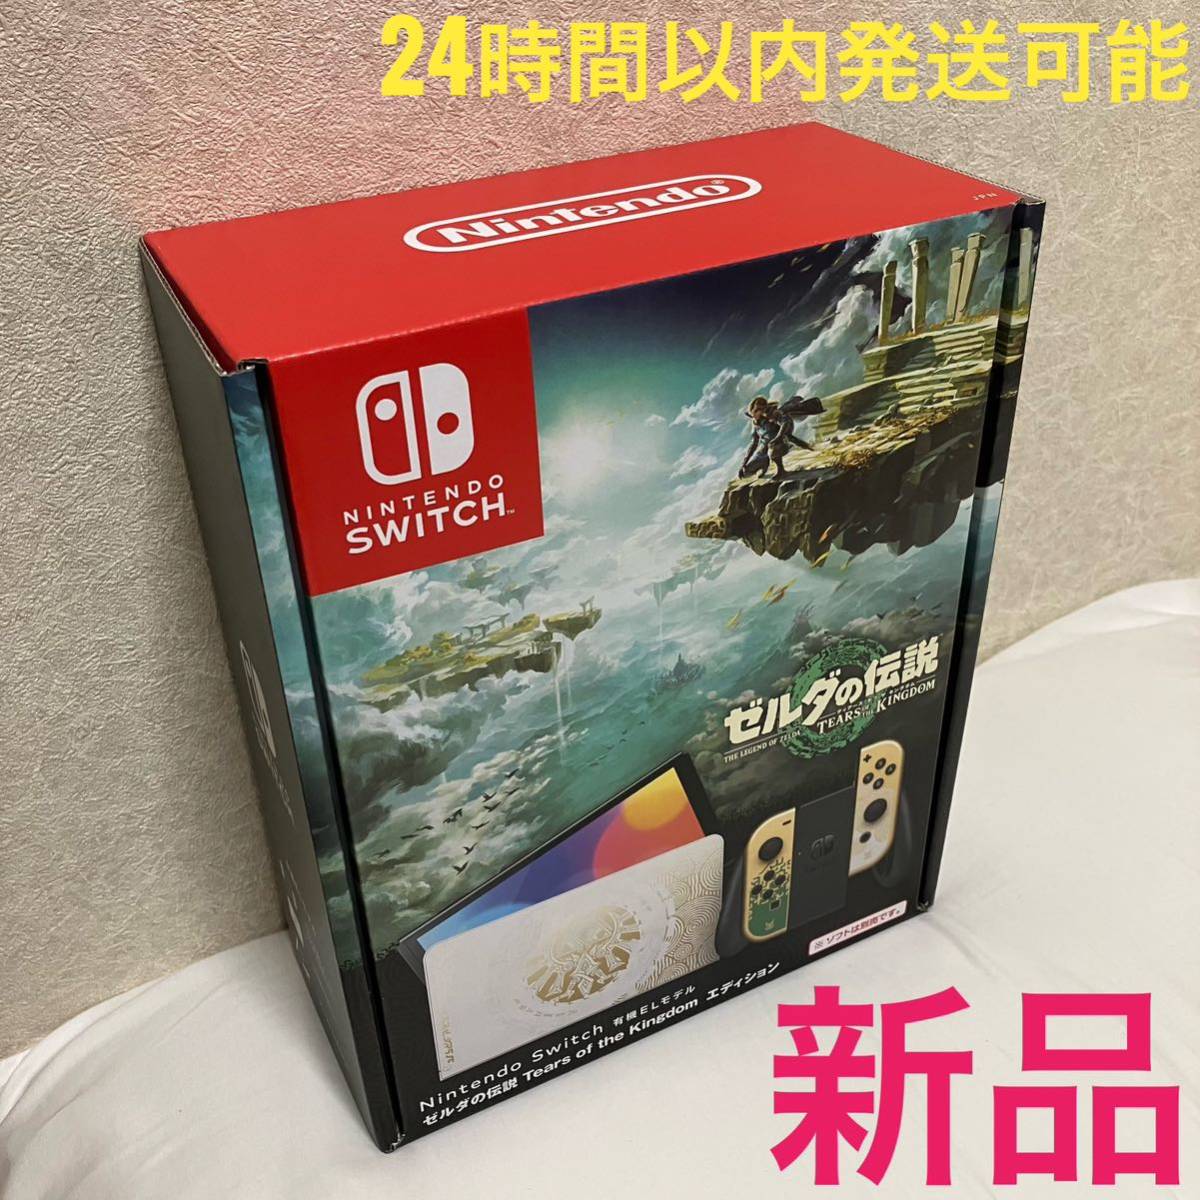 Nintendo Switch 有機ELモデル ゼルダの伝説 ティアーズ オブ ザ